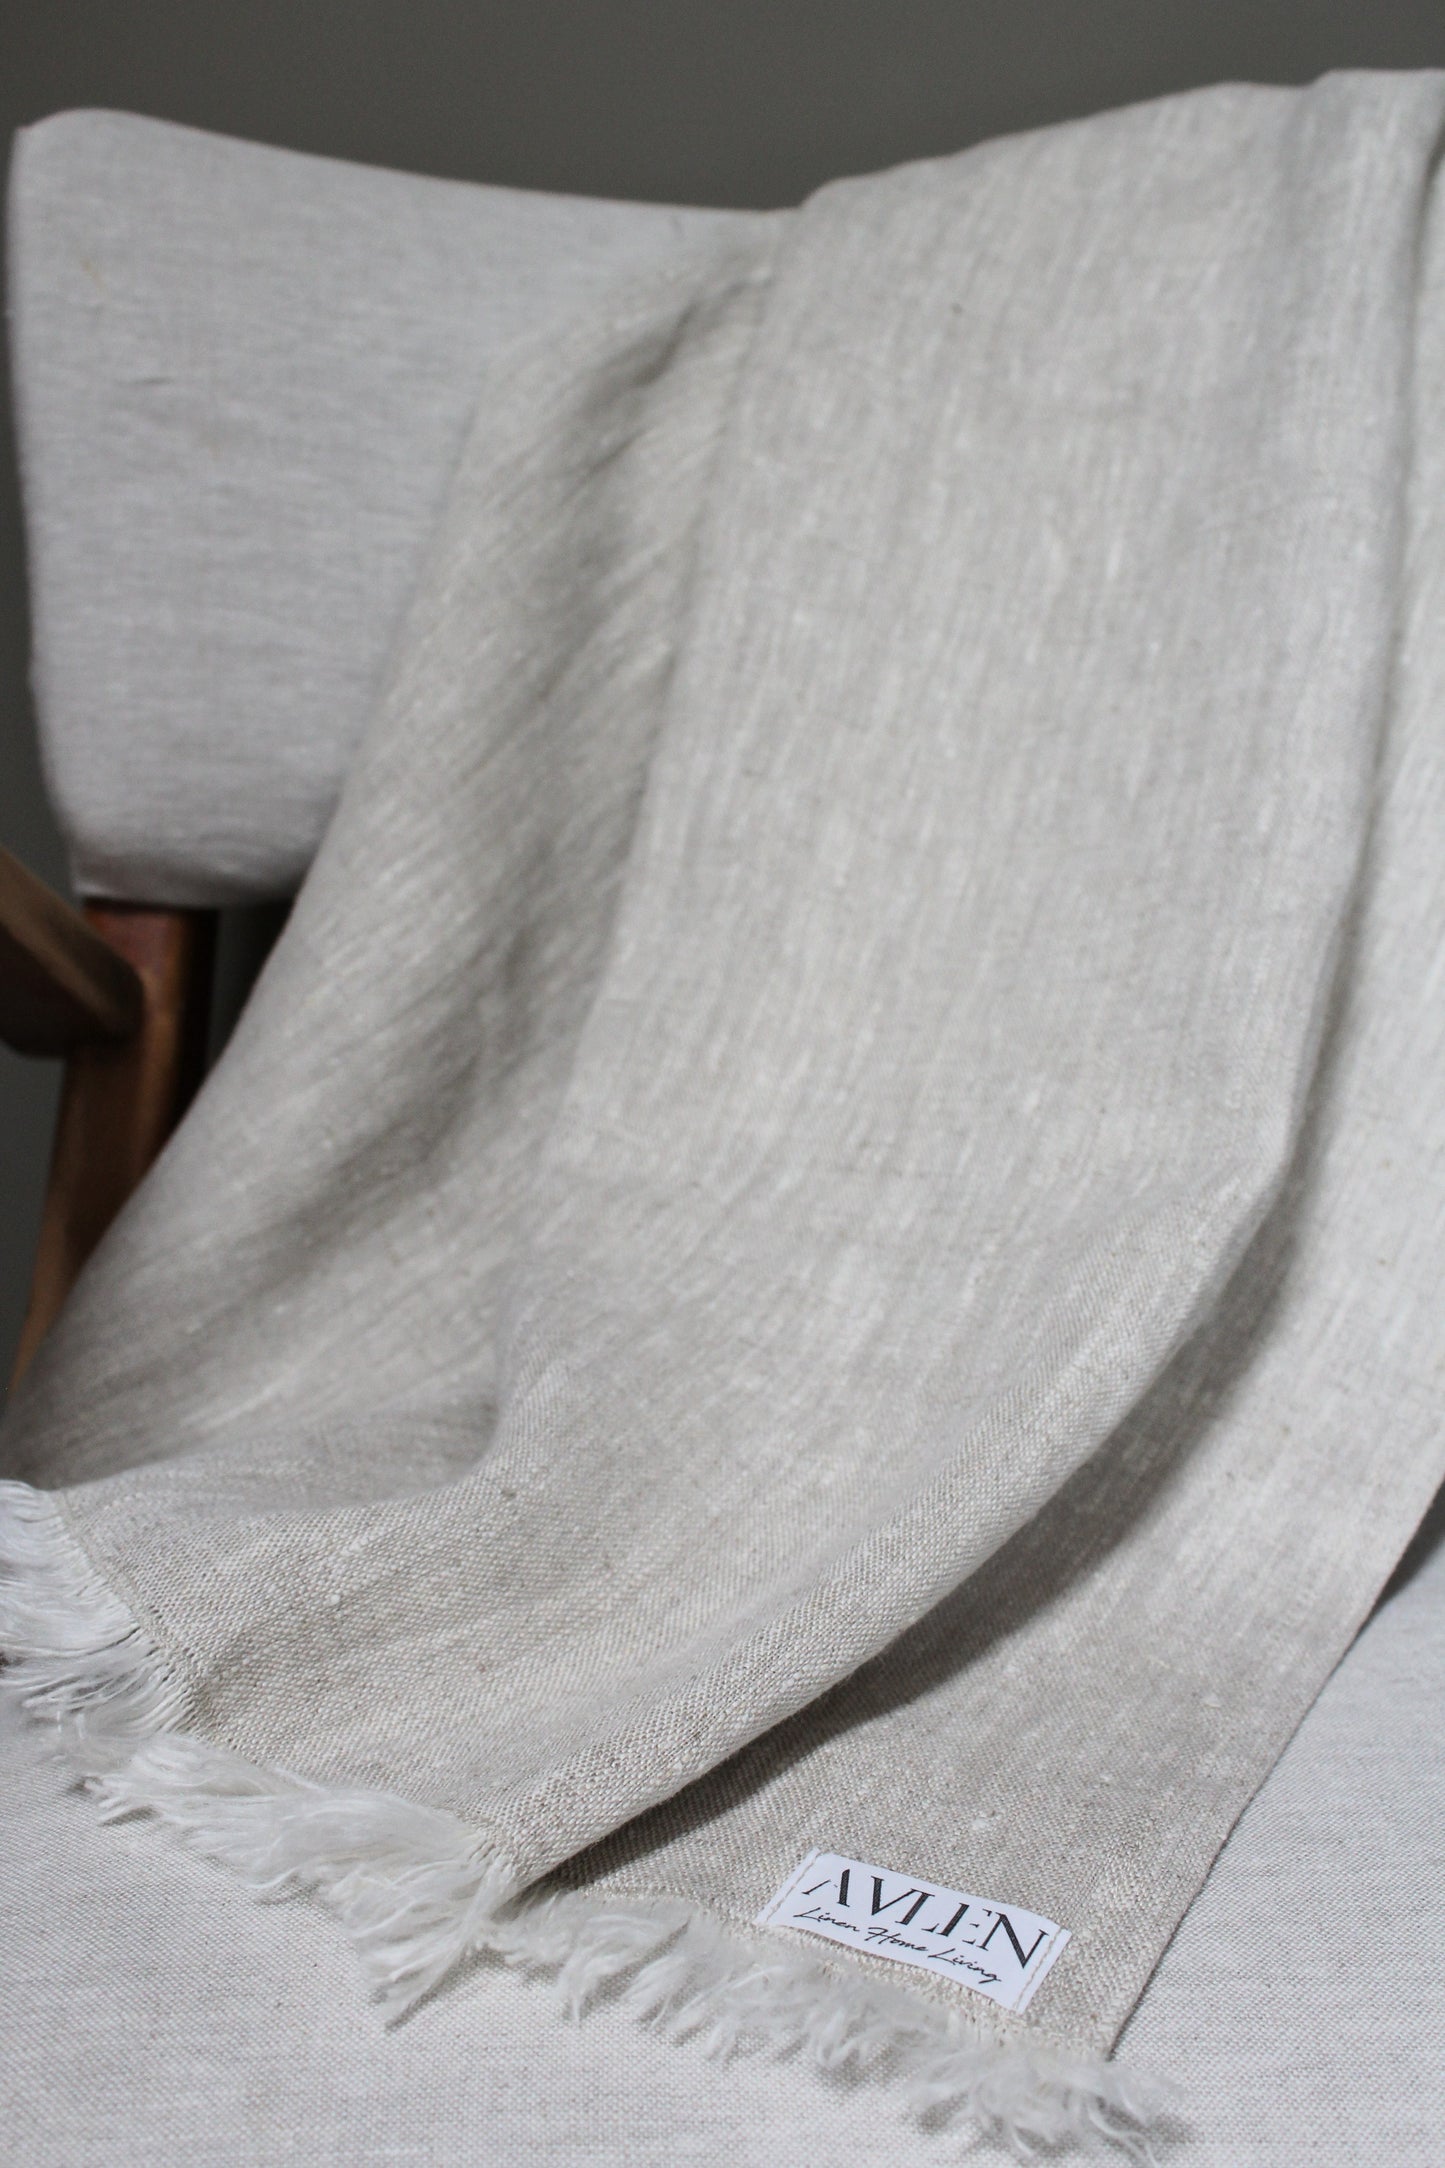 Mira Linen Blanket Throw | 2 colours available - AVLEN